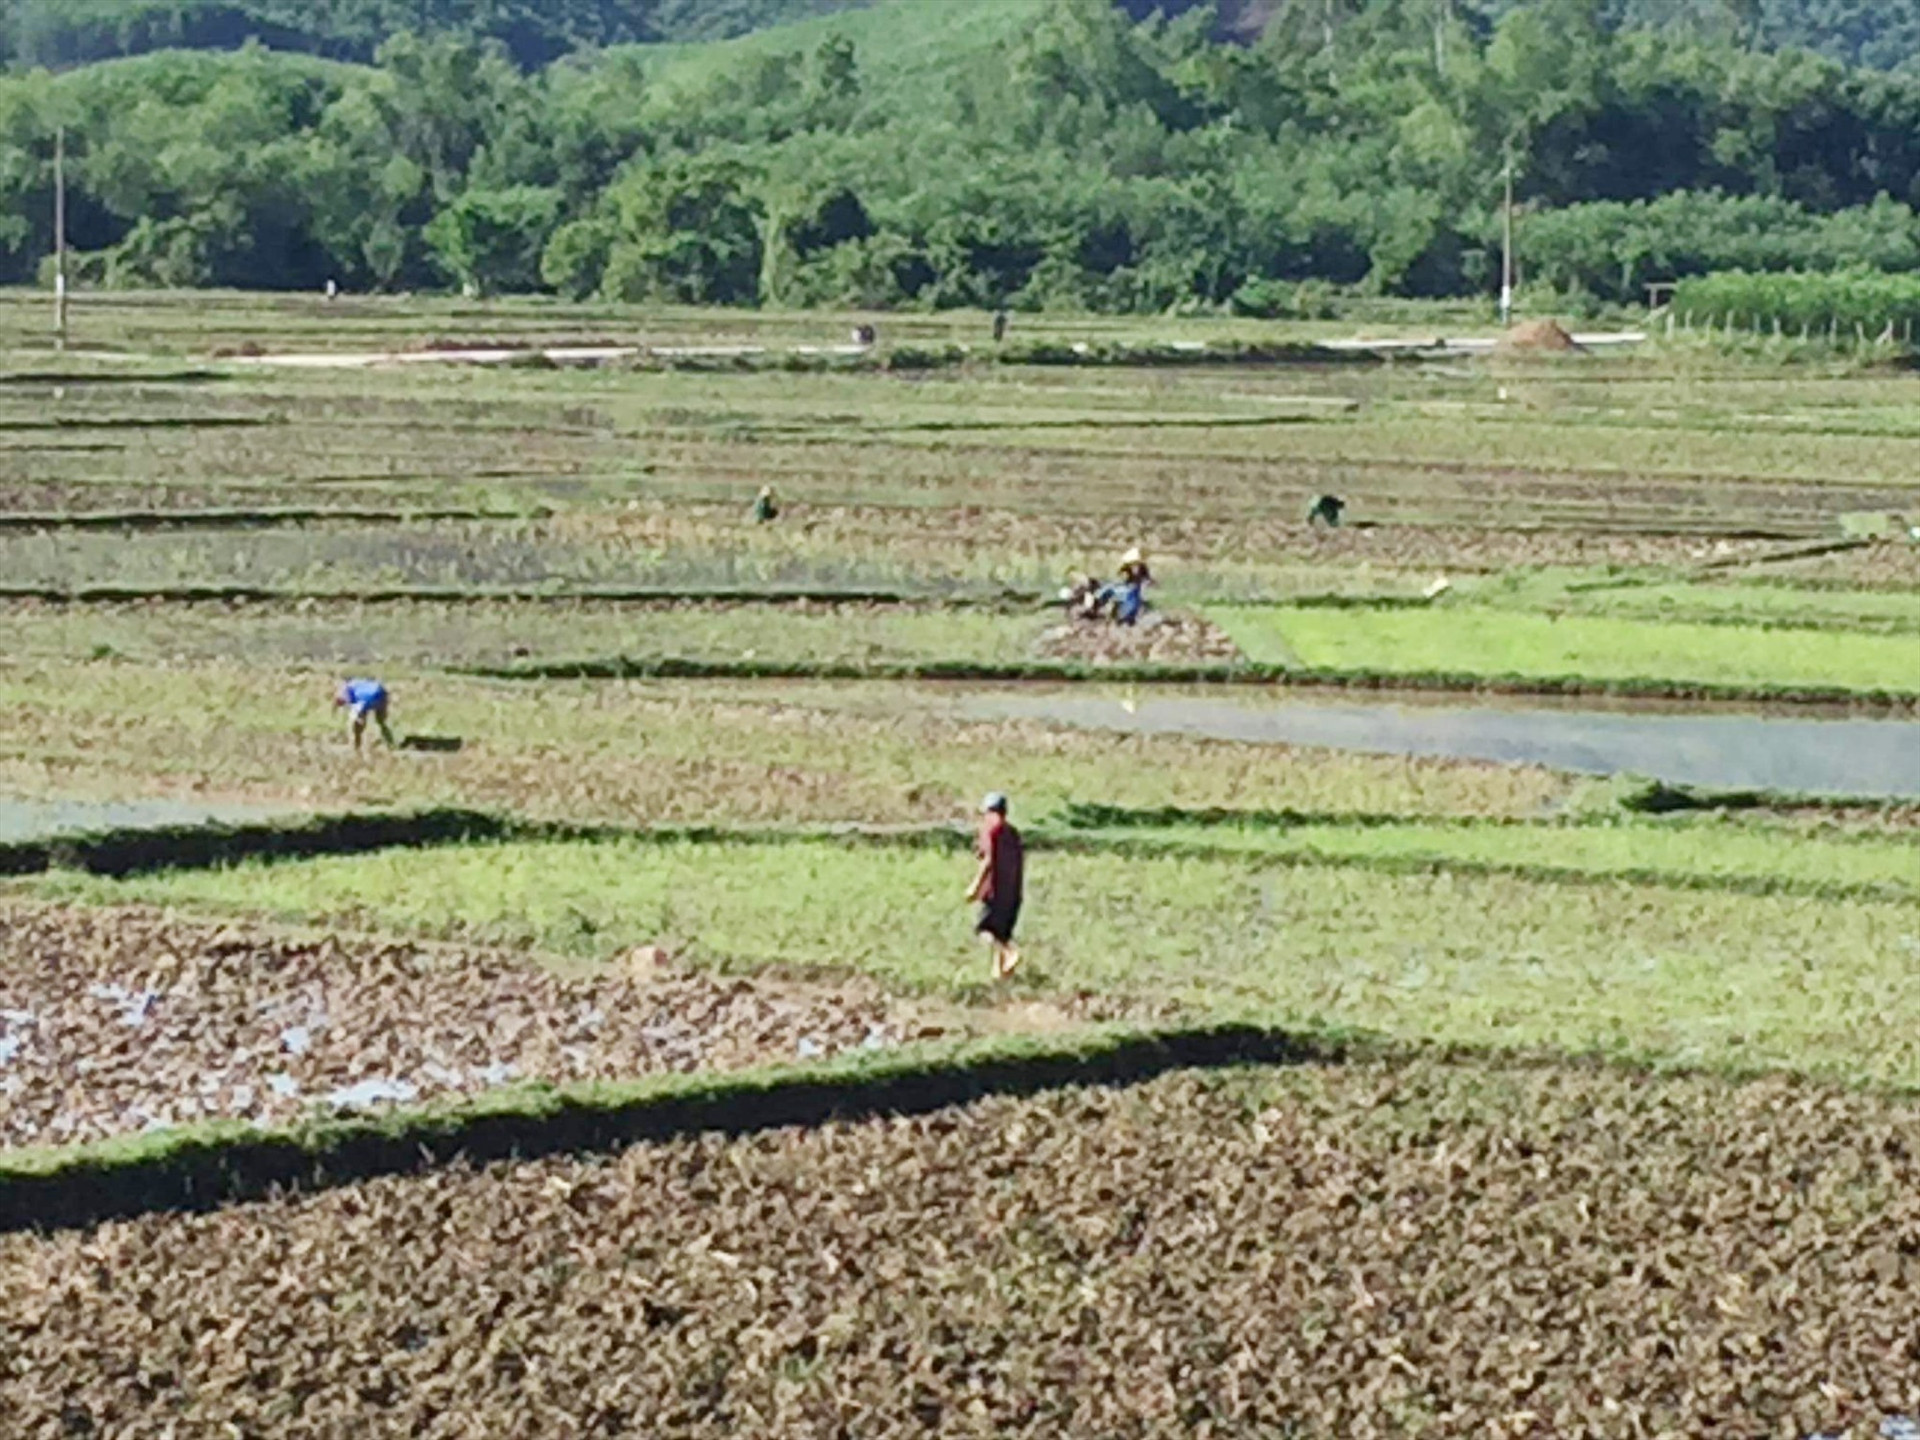 Nông dân huyện Nông Sơn đang hối hả vào vụ hè thu 2020 với tinh thần “dốc sức chống hạn”. Ảnh: HOÀNG LIÊN